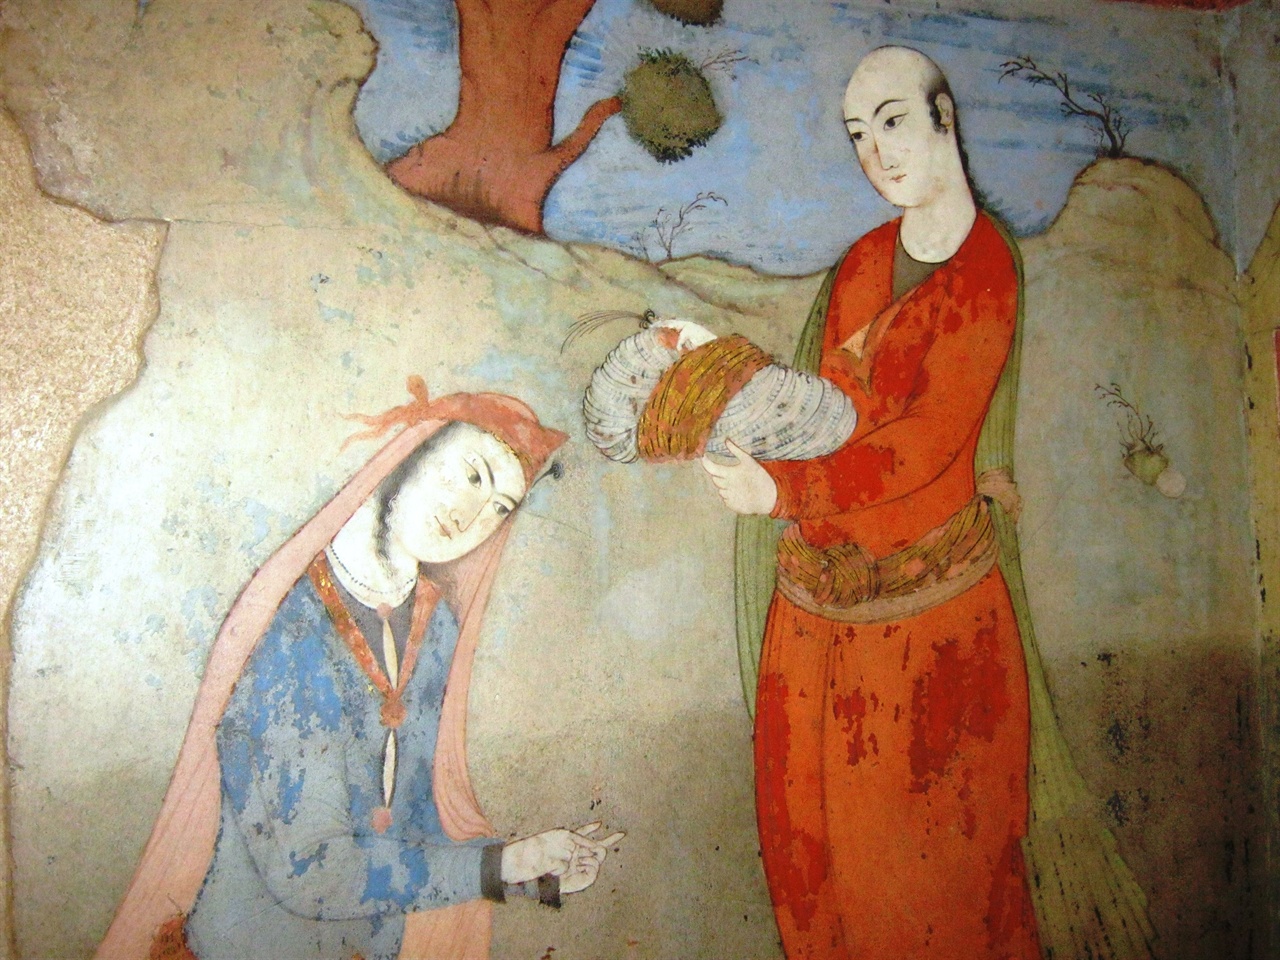 수 세기 전 남녀 간의 사랑을 묘사한 듯한 이맘 광장 건축물의 벽화.